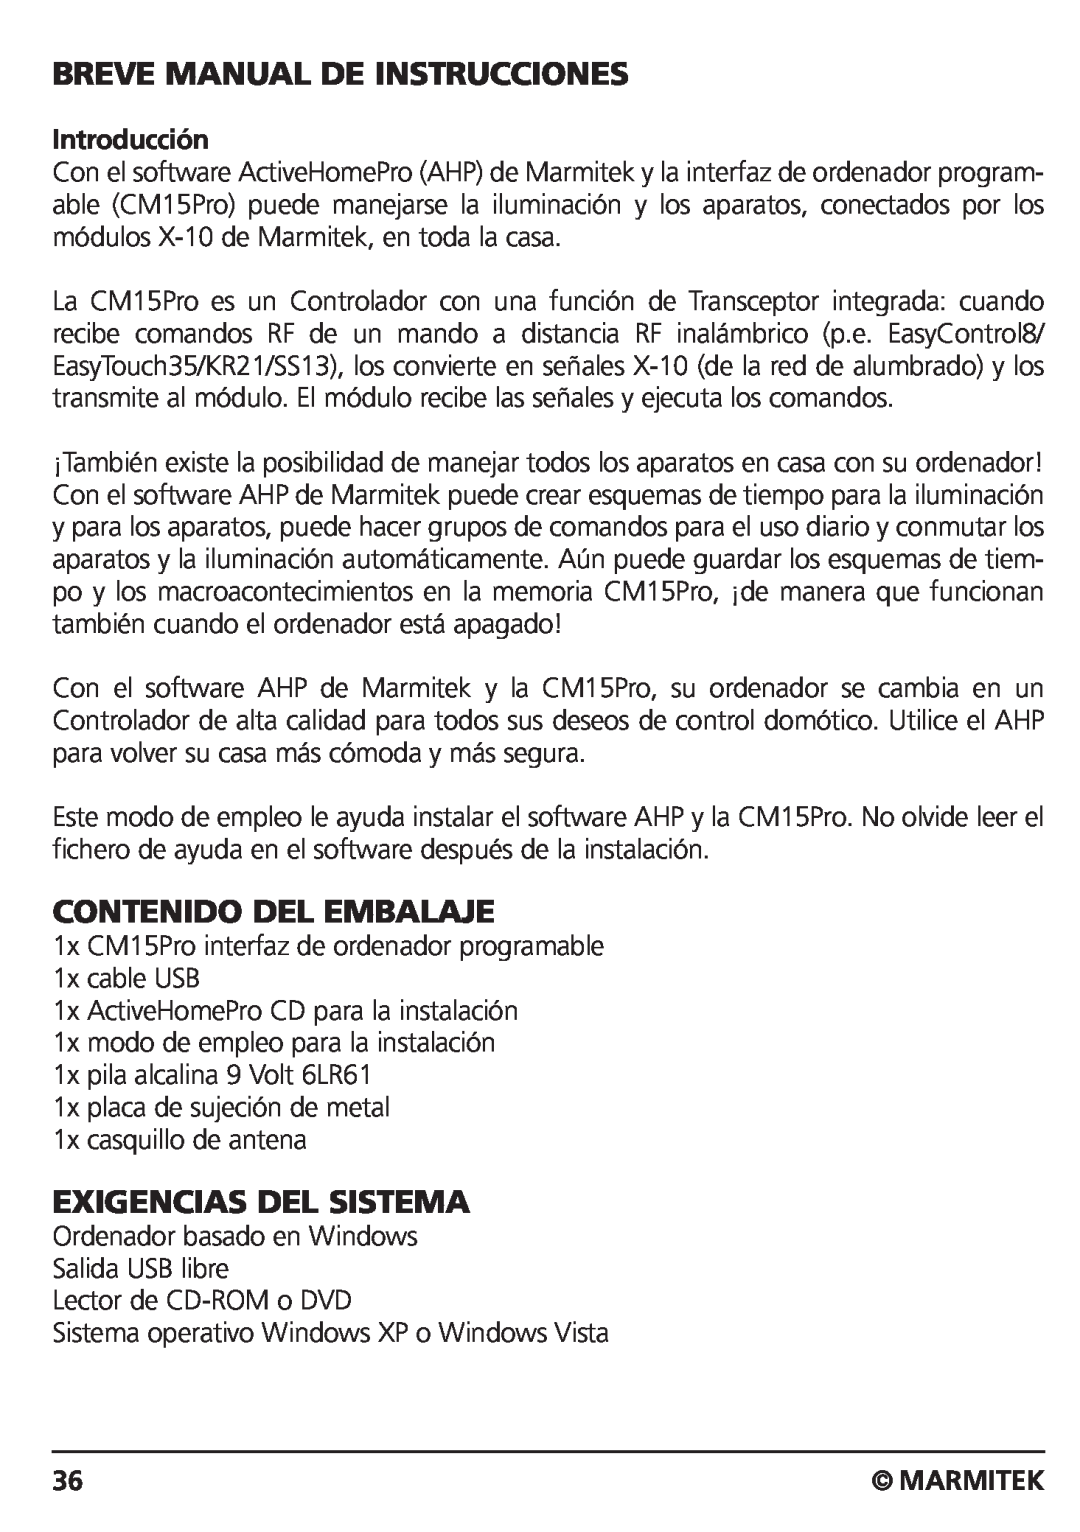 Marmitek CM15PRO Breve Manual De Instrucciones, Contenido Del Embalaje, Exigencias Del Sistema, Introducción, Marmitek 